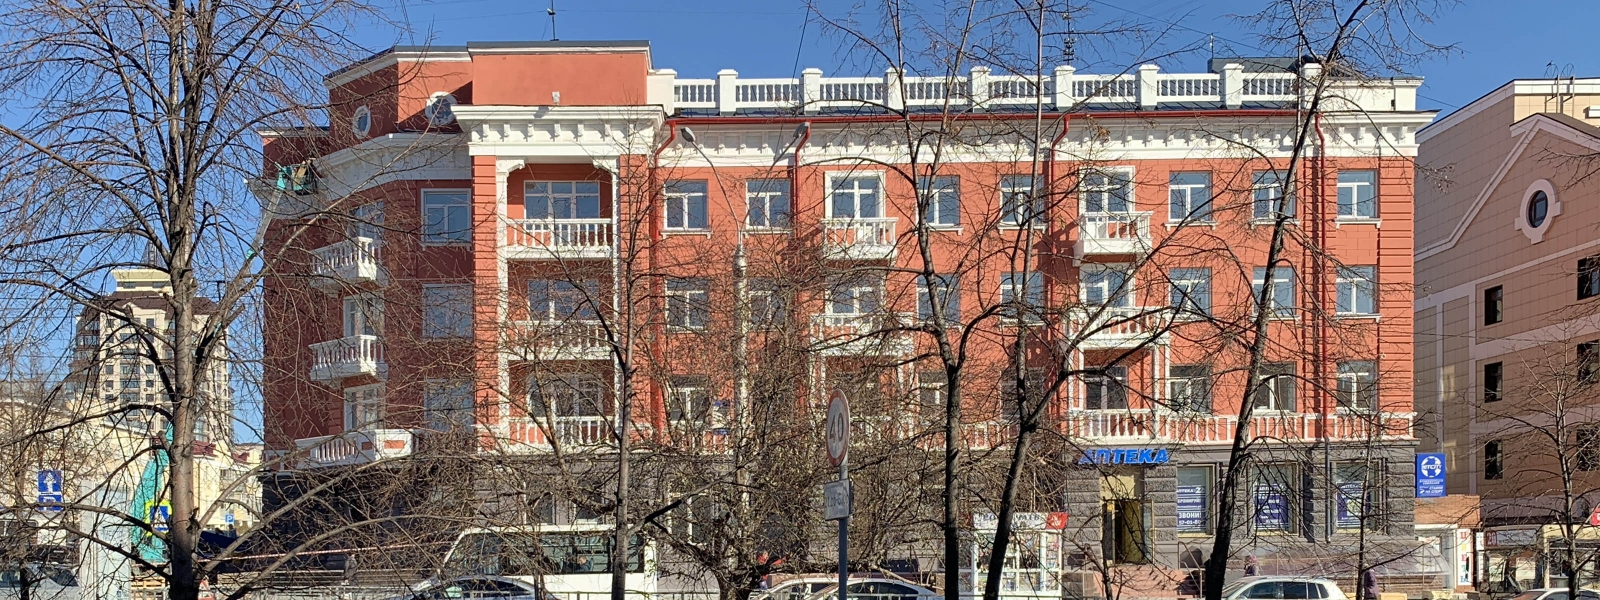 work-Гостиница "Алтай" в Барнауле. Проект реставрации и реновации